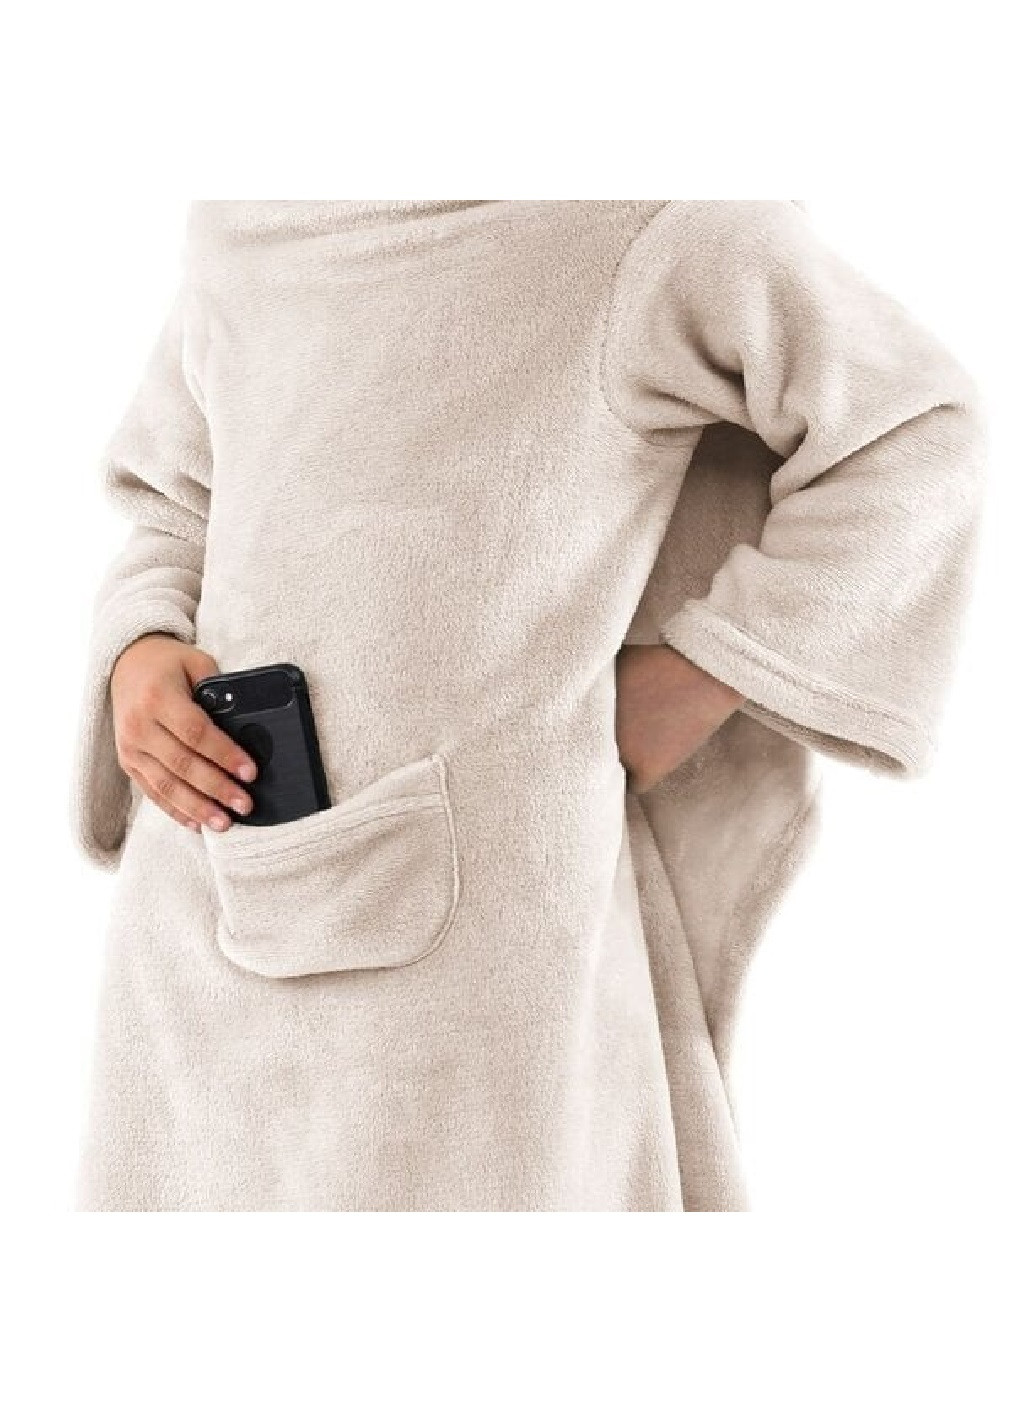 Детский плед с рукавами и карманами покрывало одеяло микрофибра 90х105 см (473632-Prob) Бежевый Unbranded (255708284)